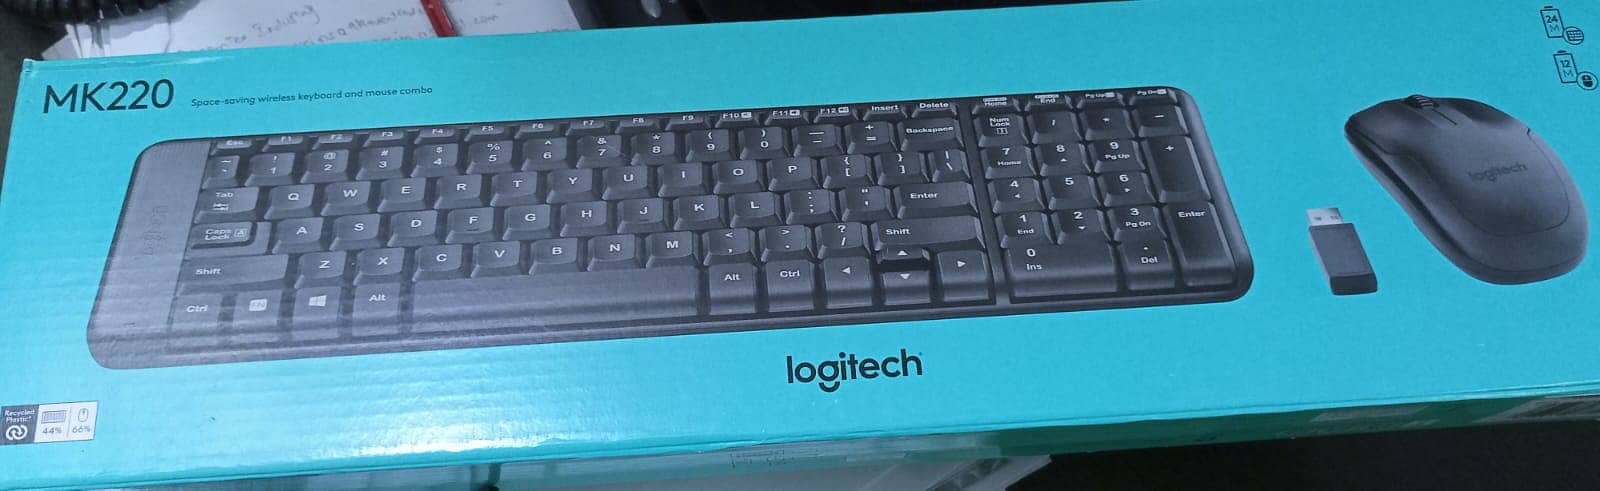 Logitech MK220 Compact Wireless Keyboard Mouse Combo 0